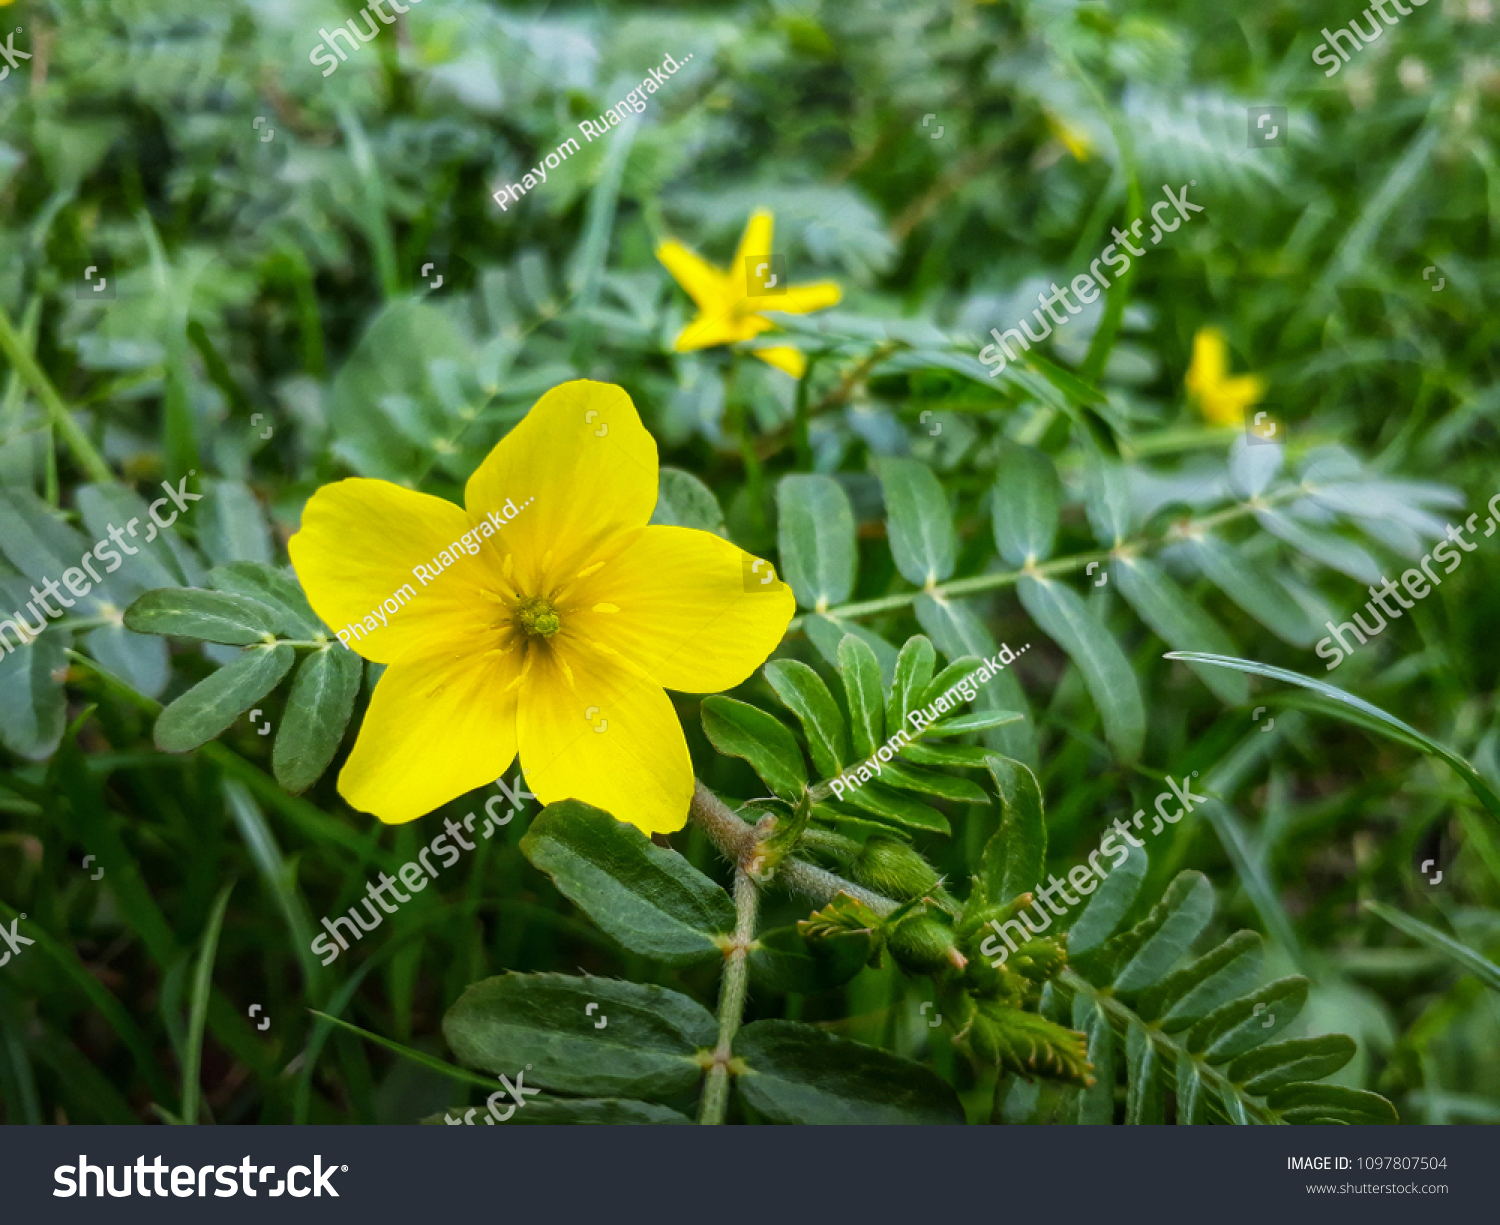 Yellow grass flower on green grass #1097807504